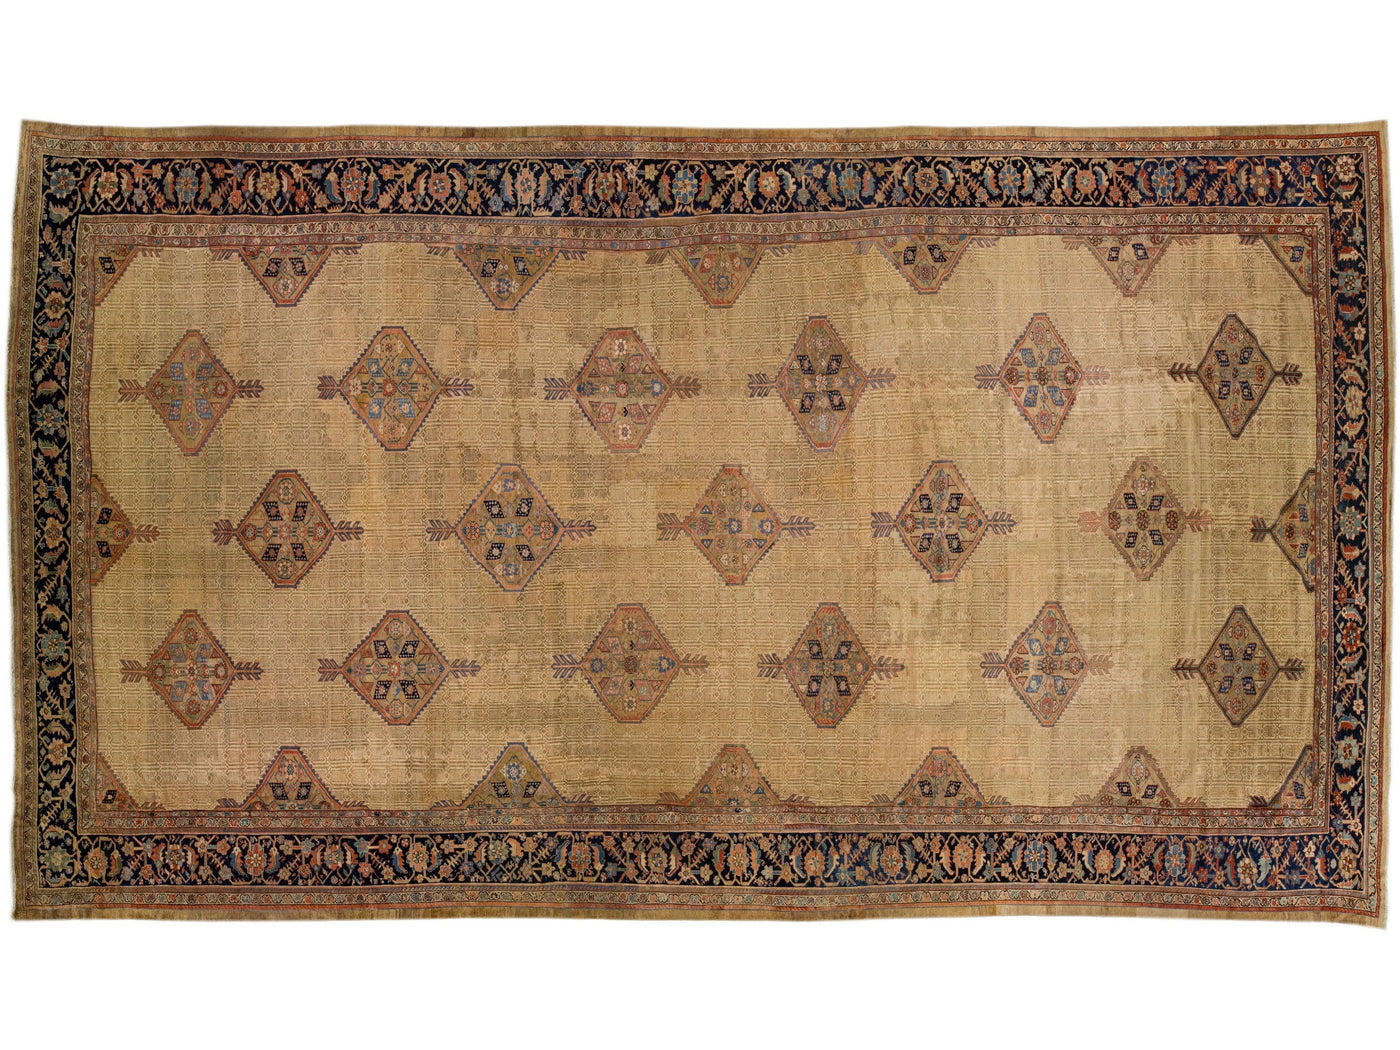 Antique Persian Hamadan Tan Handmade Geometric Motif Wool Rug